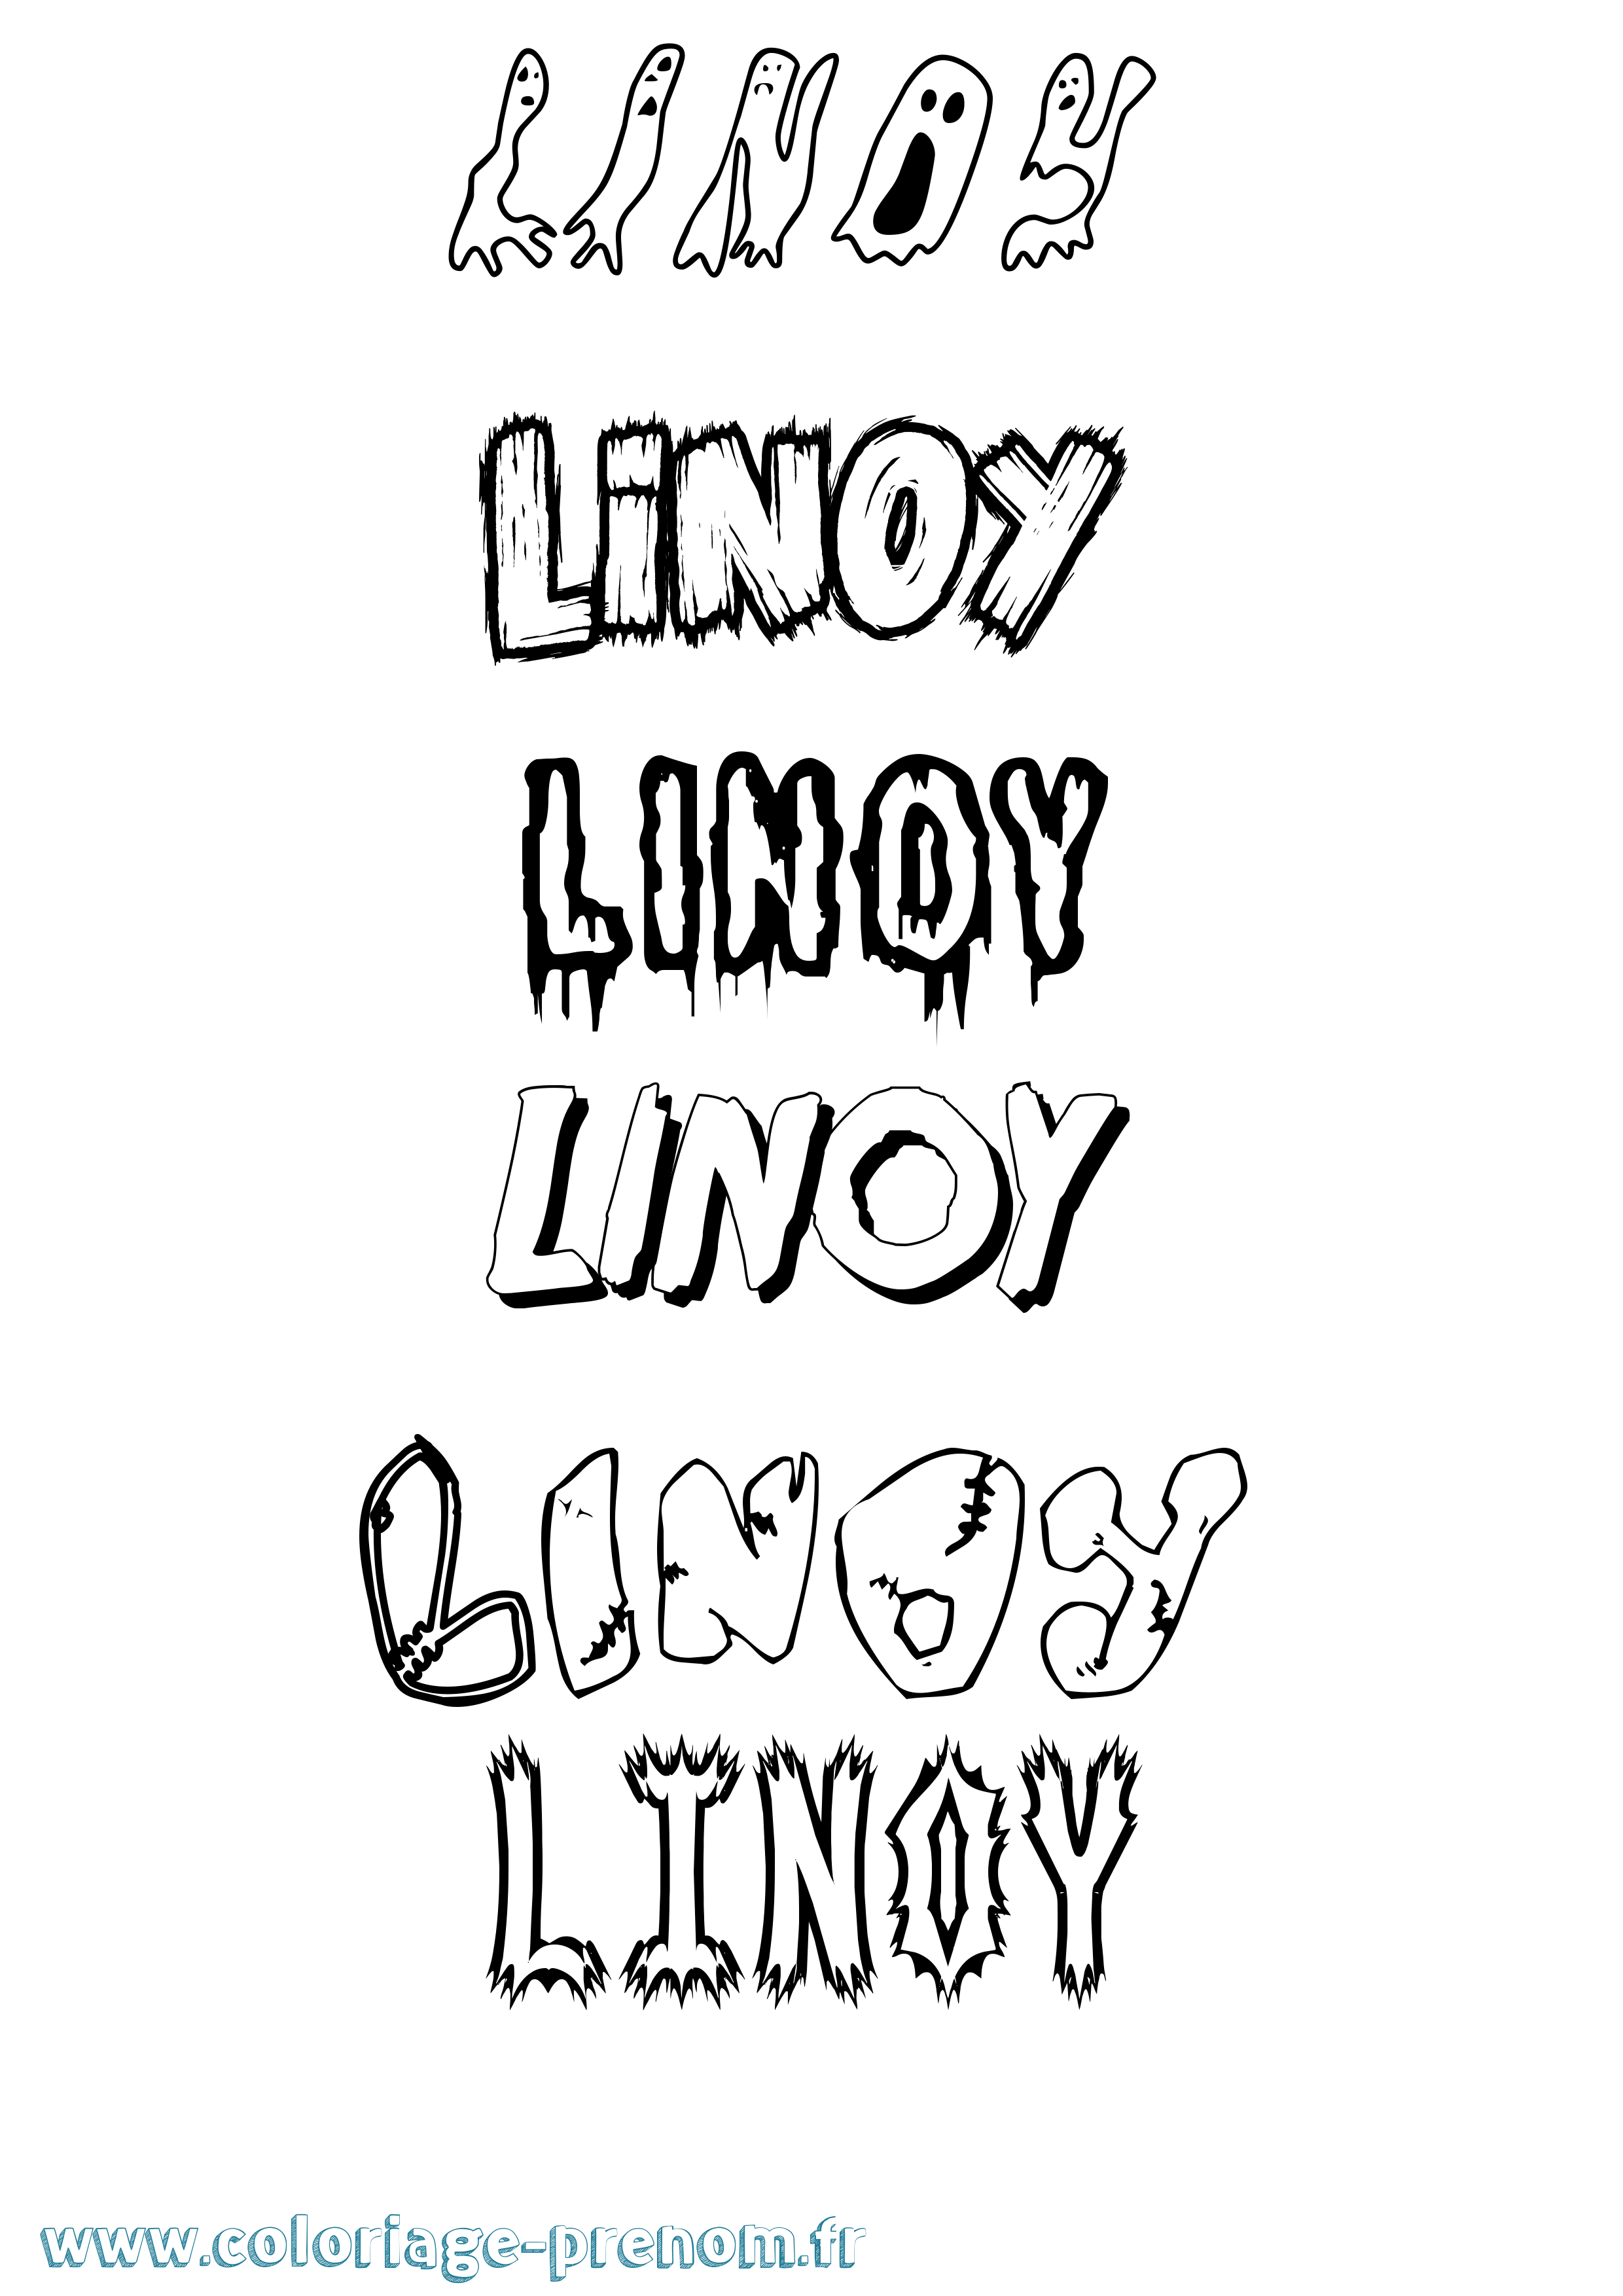 Coloriage prénom Linoy Frisson